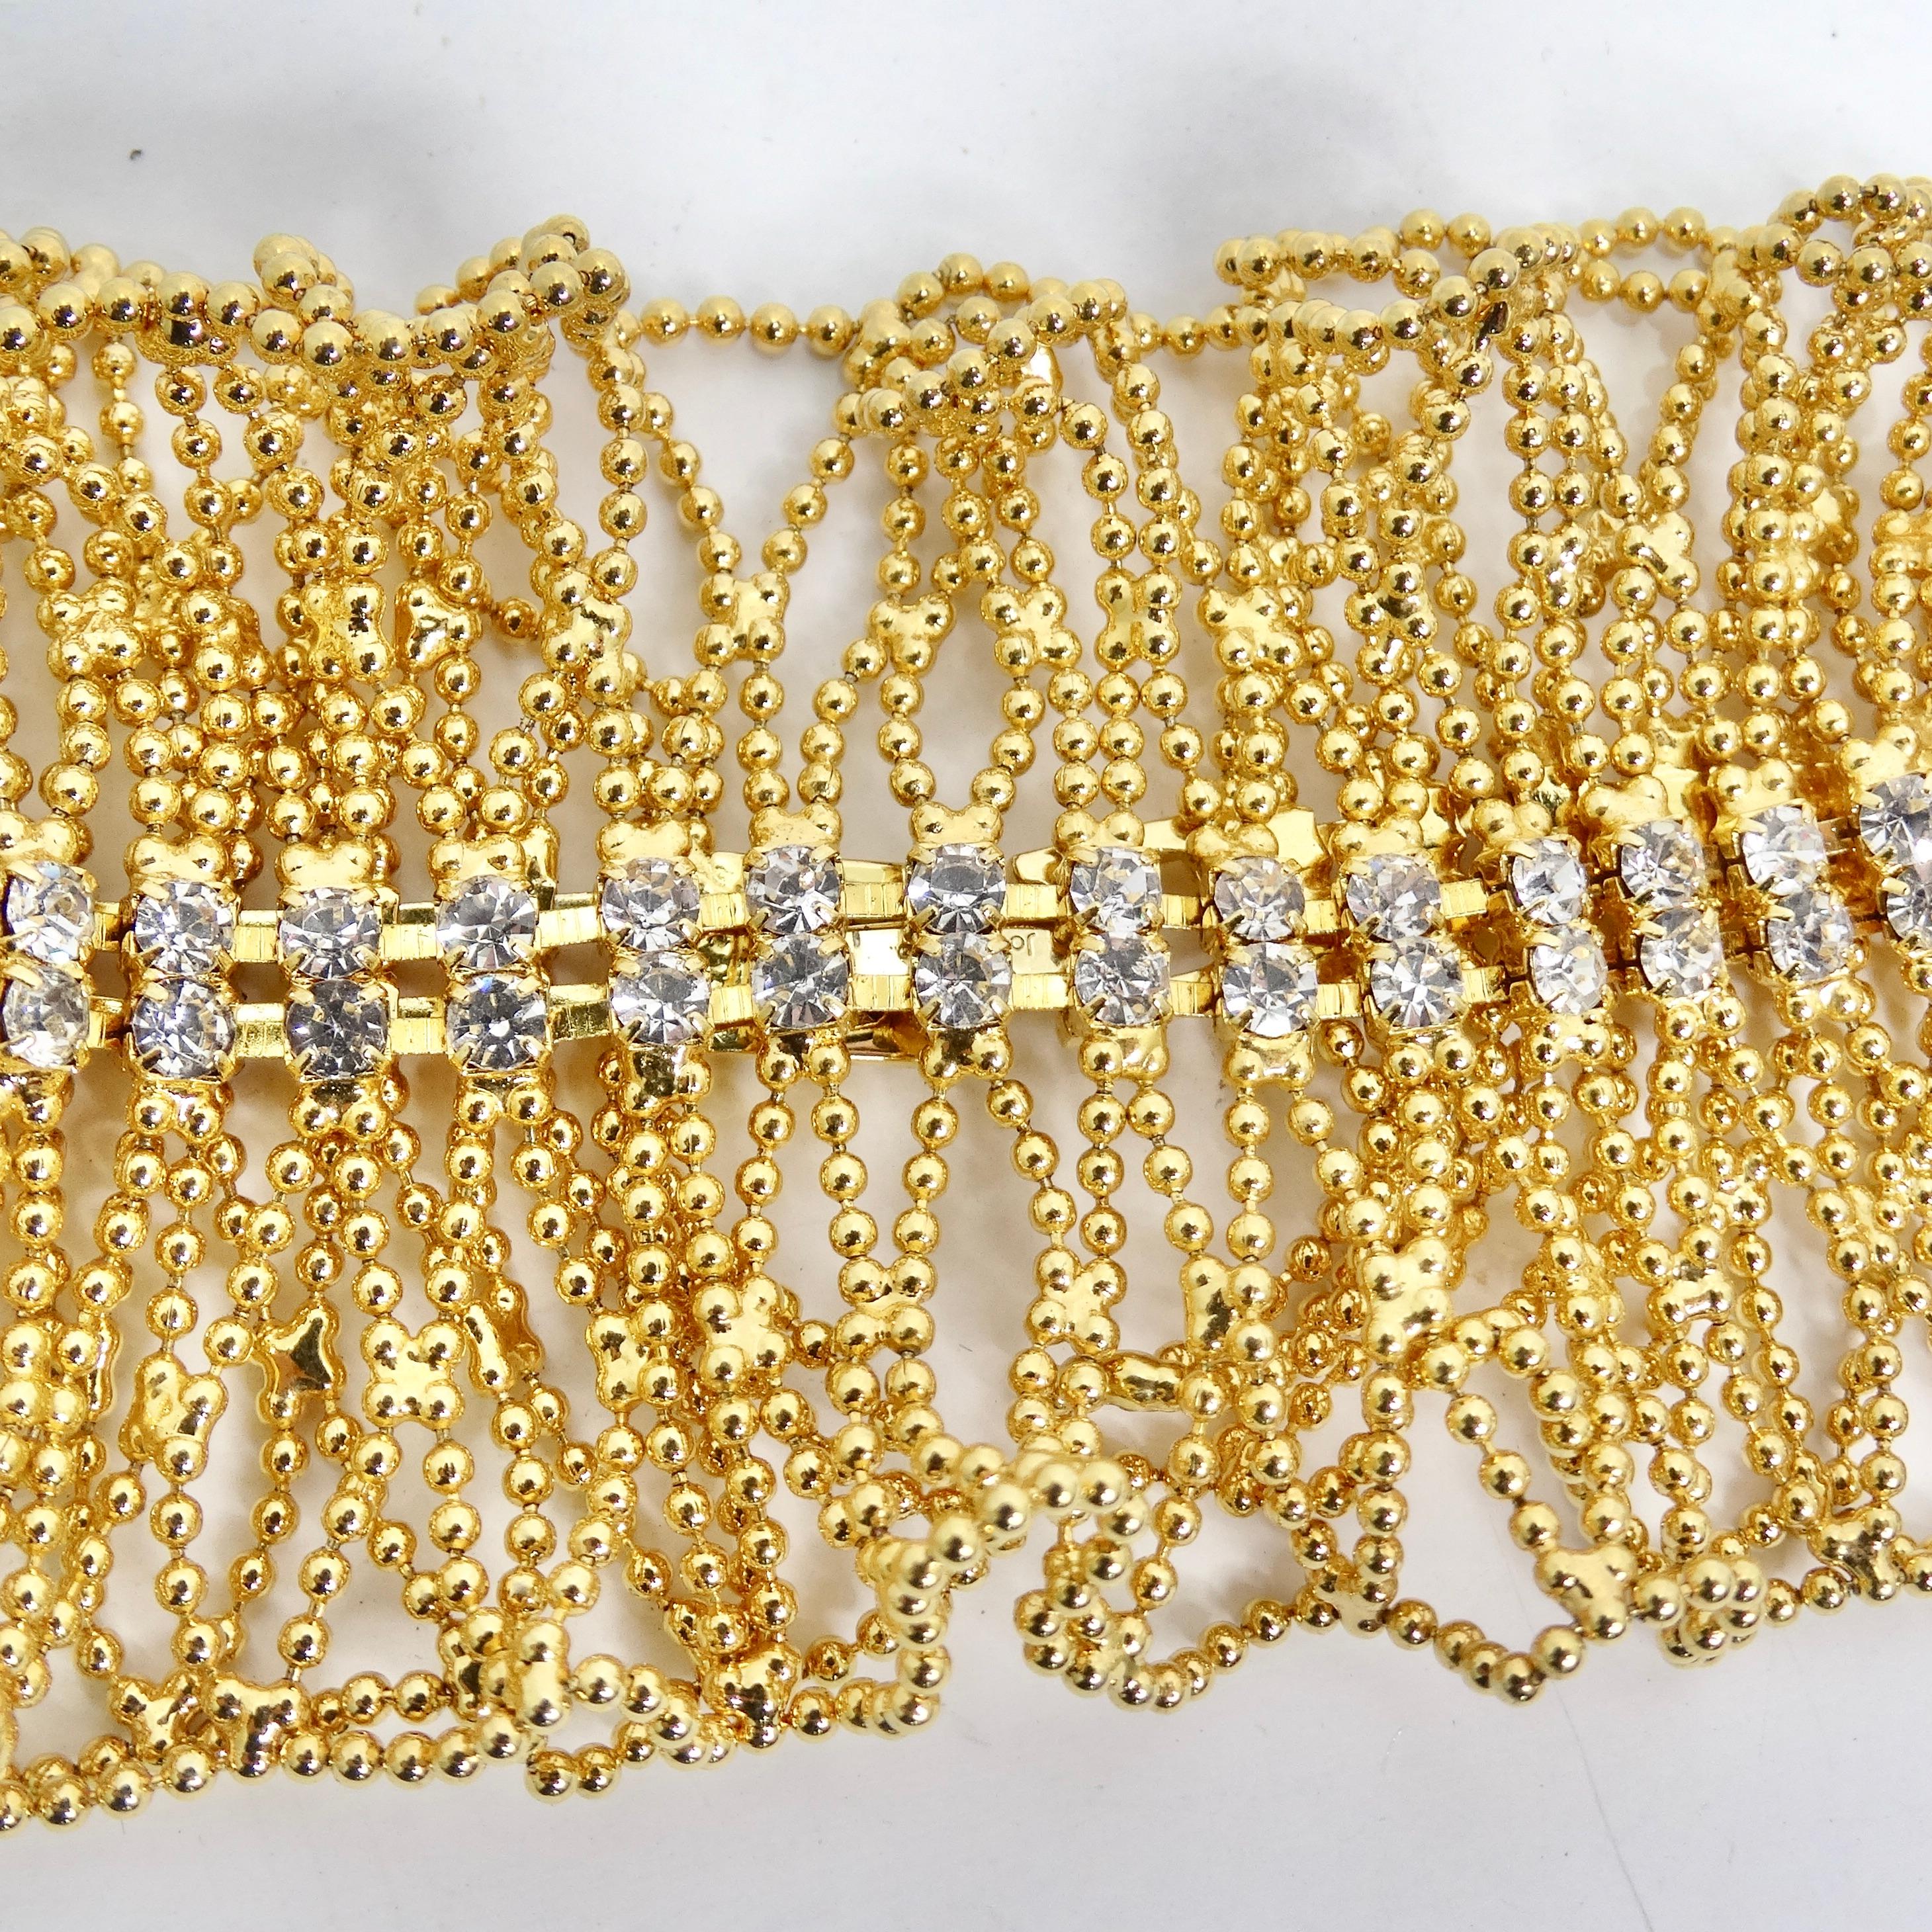 18K Gold Plated Swarovski Crystal Bracelet In Excellent Condition For Sale In Scottsdale, AZ